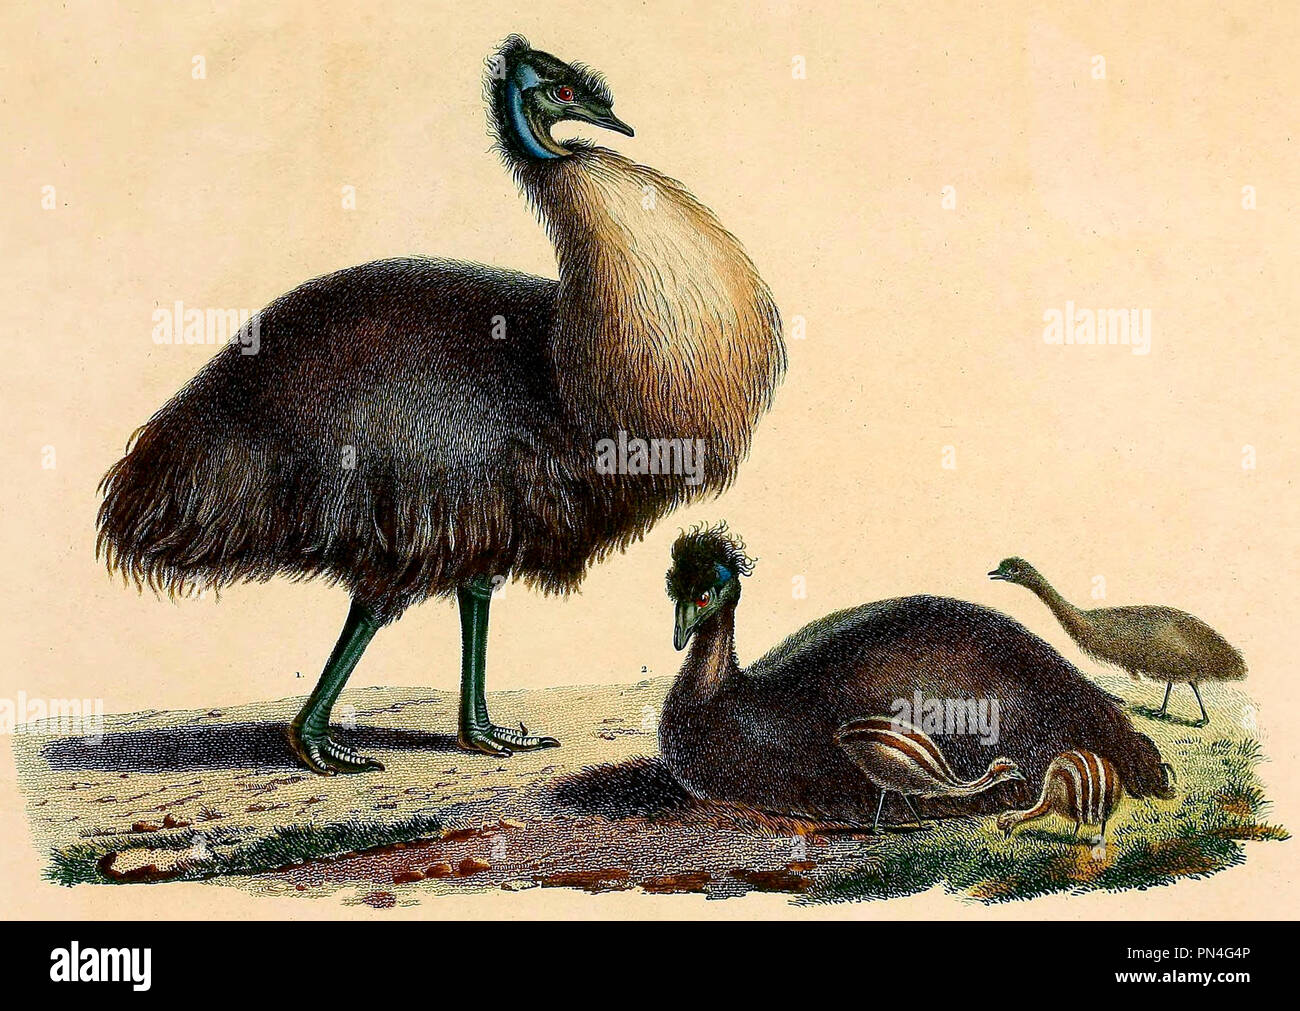 L'Émeu noir de Kangaroo Island. Le grand oiseau est pensé pour être basé sur une île Kangourou l'UEM, et les petits l'un sur l'île King l'UEM, mais ont été pensé pour être un mâle et femelle de la même espèce à l'époque. Charles-Alexandre Lesueur, vers 1810 Banque D'Images